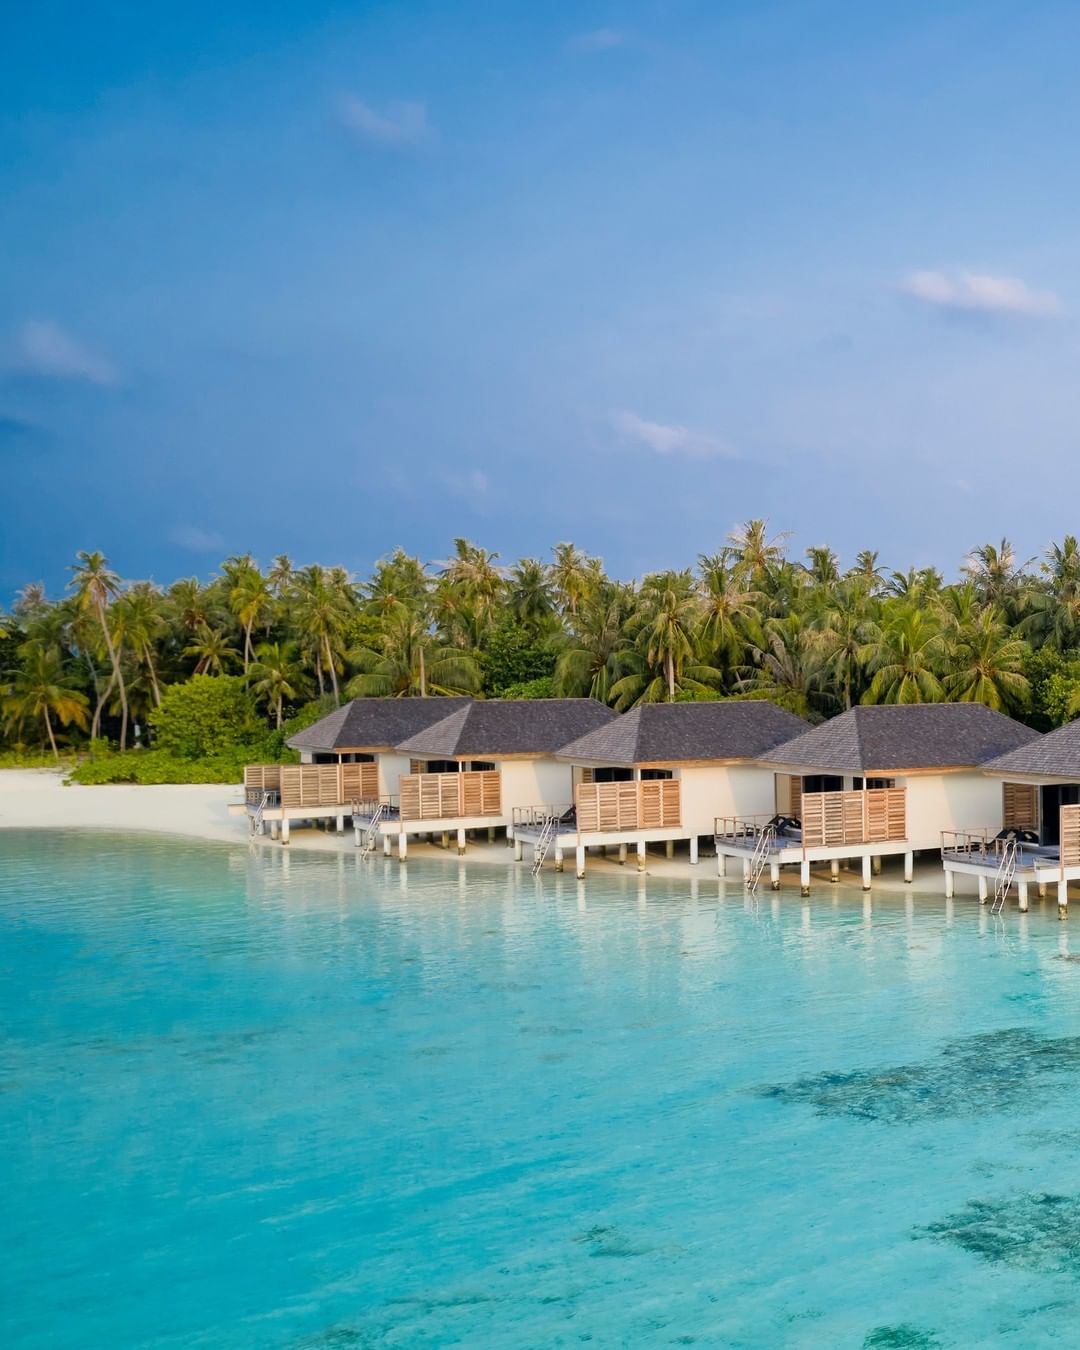 艾美酒店 Le Meridien Maldives Resort & Spa ,马尔代夫风景图片集:沙滩beach与海水water太美，泳池pool与水上活动watersport好玩